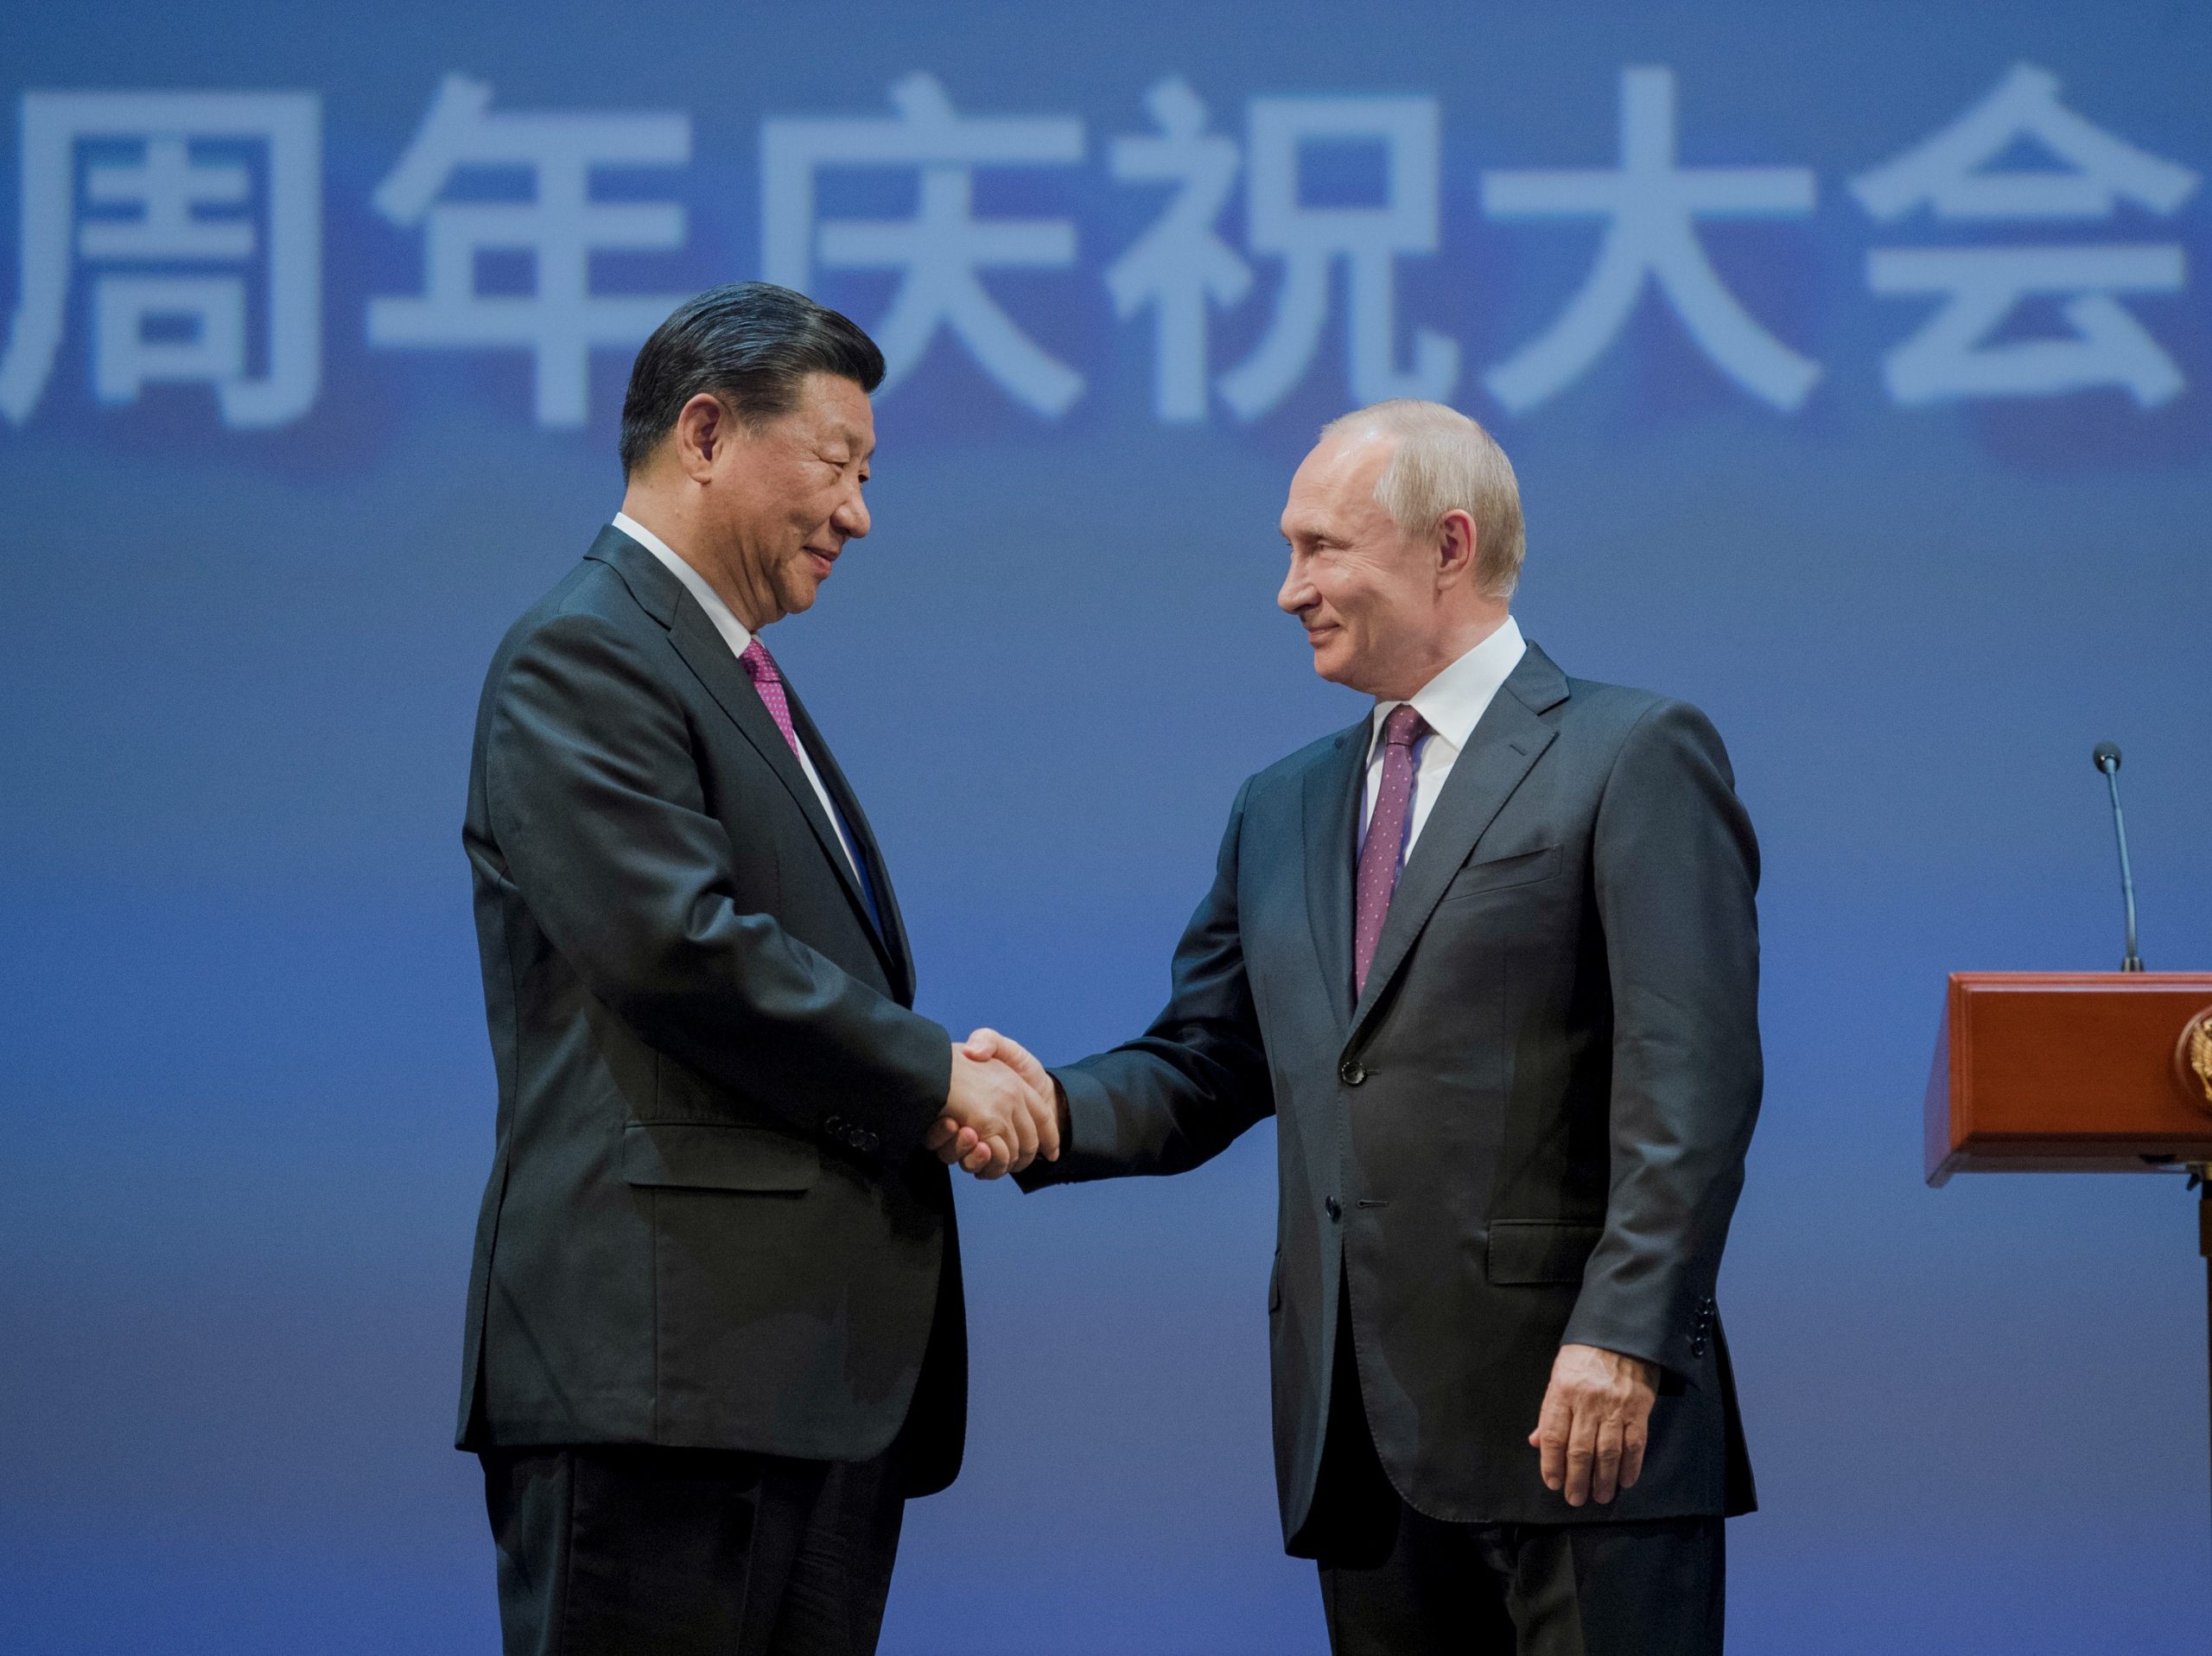 De cara al 2021, avanza la cooperación China-Rusia (nota de Xinhua) julioastillero.com